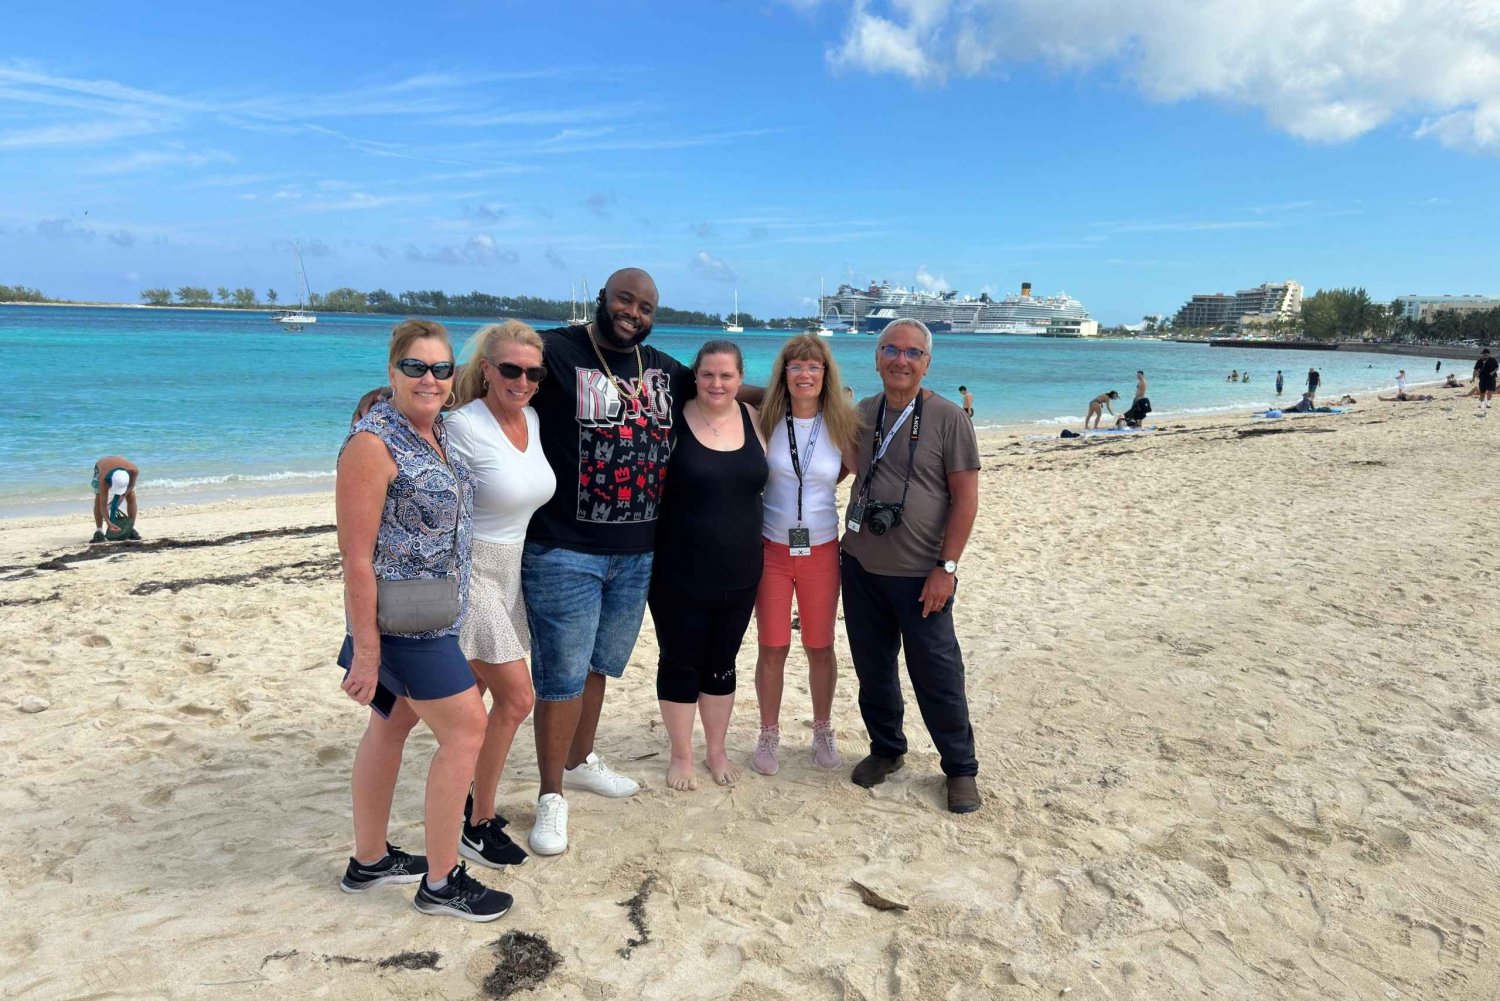 Wycieczka po mieście Nassau: Odkryj uroki starego Charles Towne